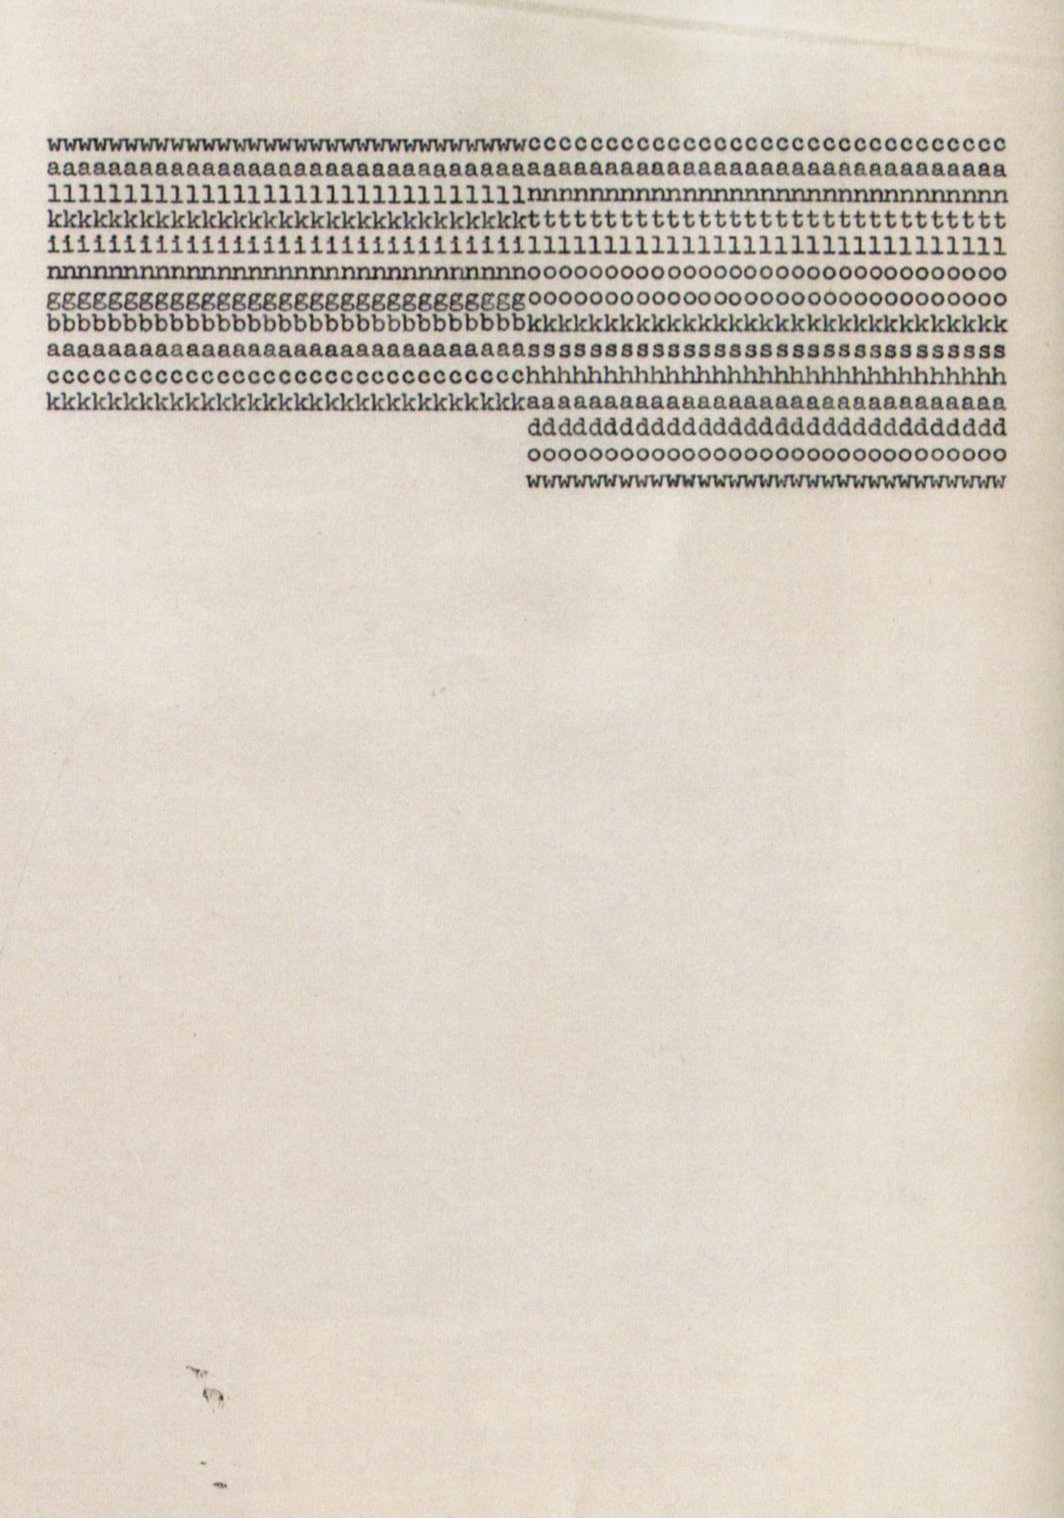 卡尔•安德烈，《wwwwwwwwwwwwwwwwwwwwwwwwwwwwwwwcccccc­ccccccccccccccccccccccccc》，1962， 纸上打字机墨水, 11 x 81⁄2"。